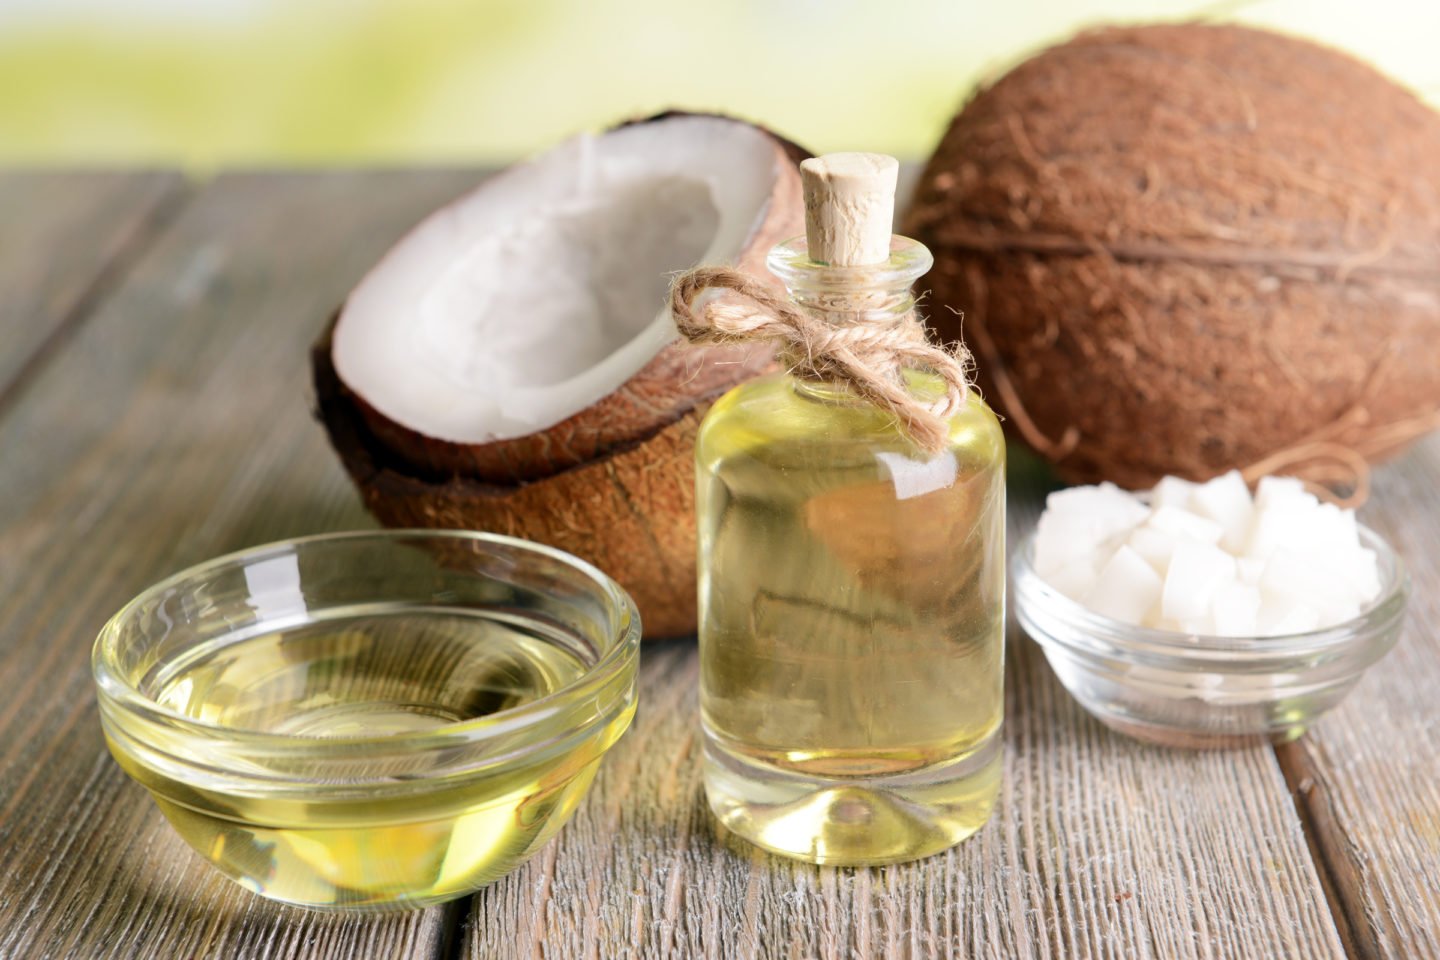 best coconut oil substitute